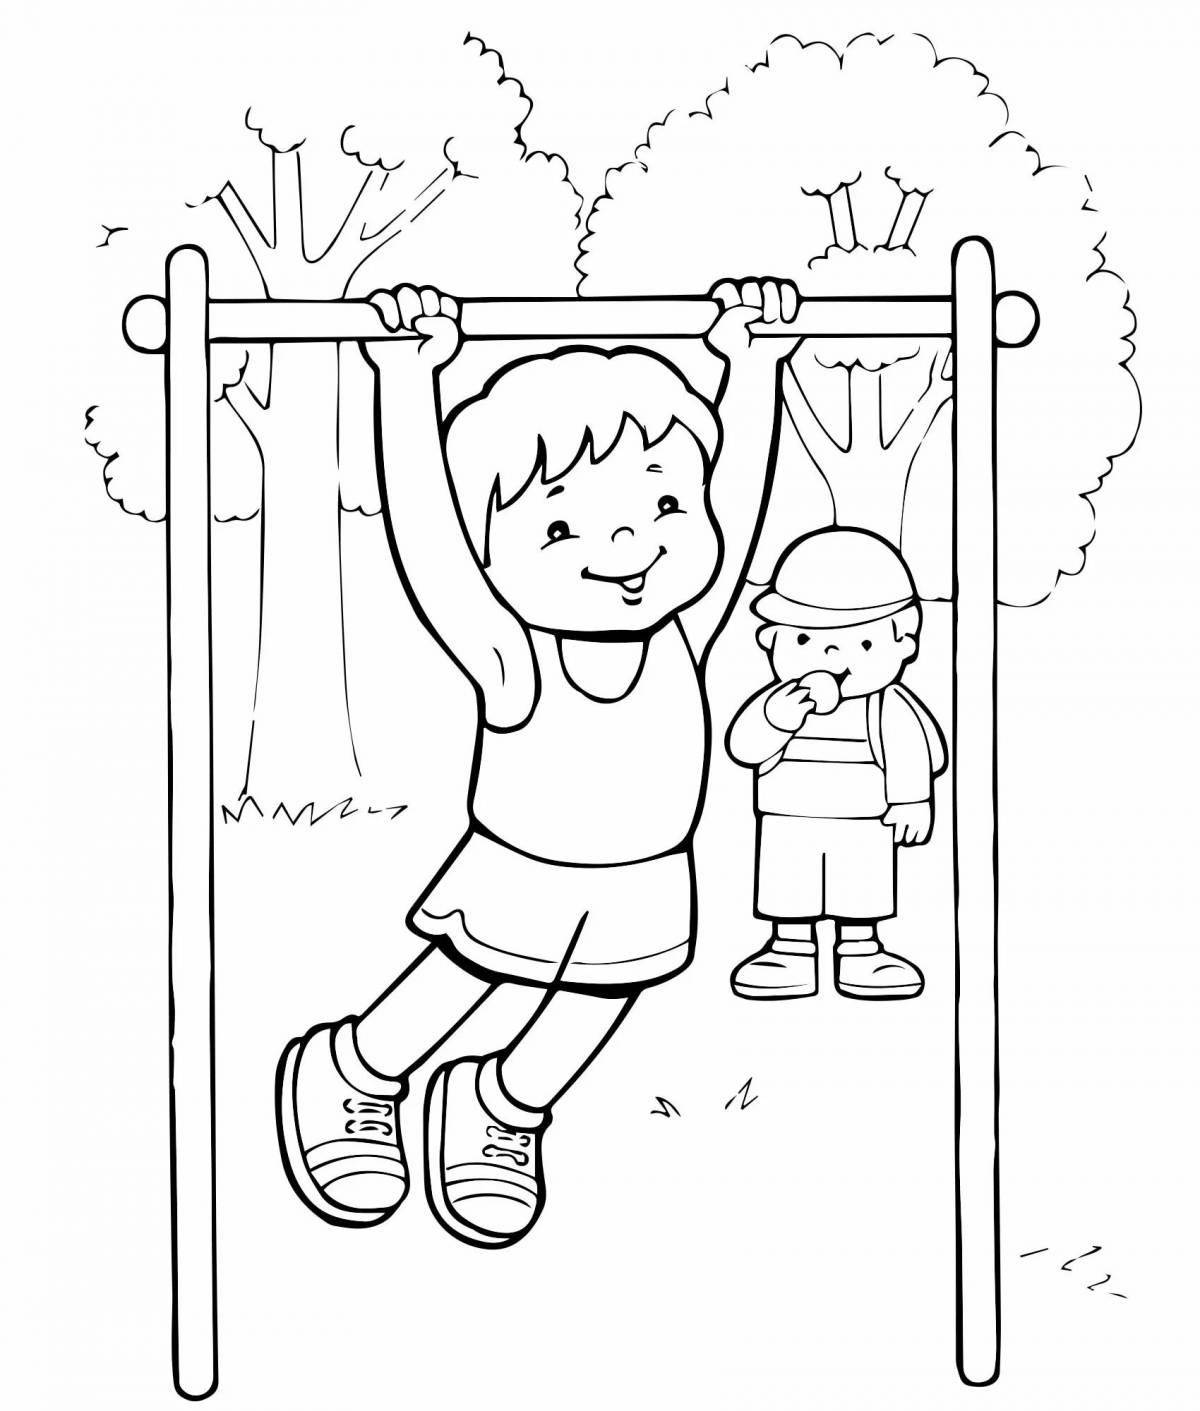 О спорте и здоровом образе жизни для детей #10